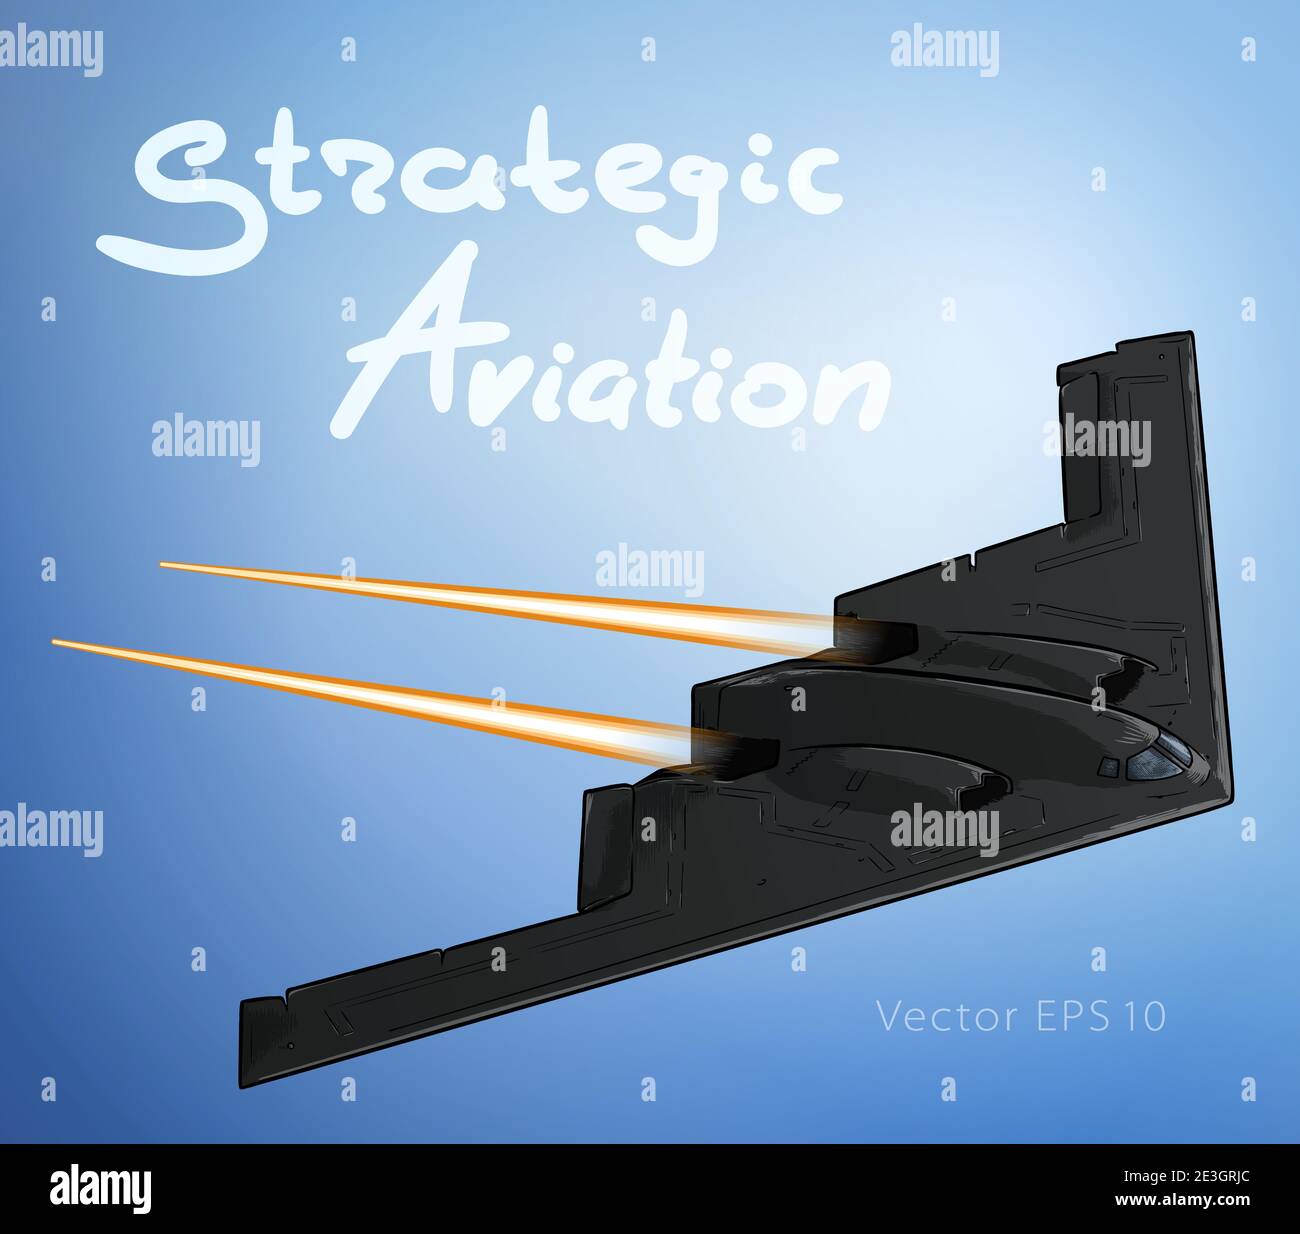 Un avion d'aviateur furtif dans une illustration vectorielle d'esquisse de vol. Force stratégique Illustration de Vecteur